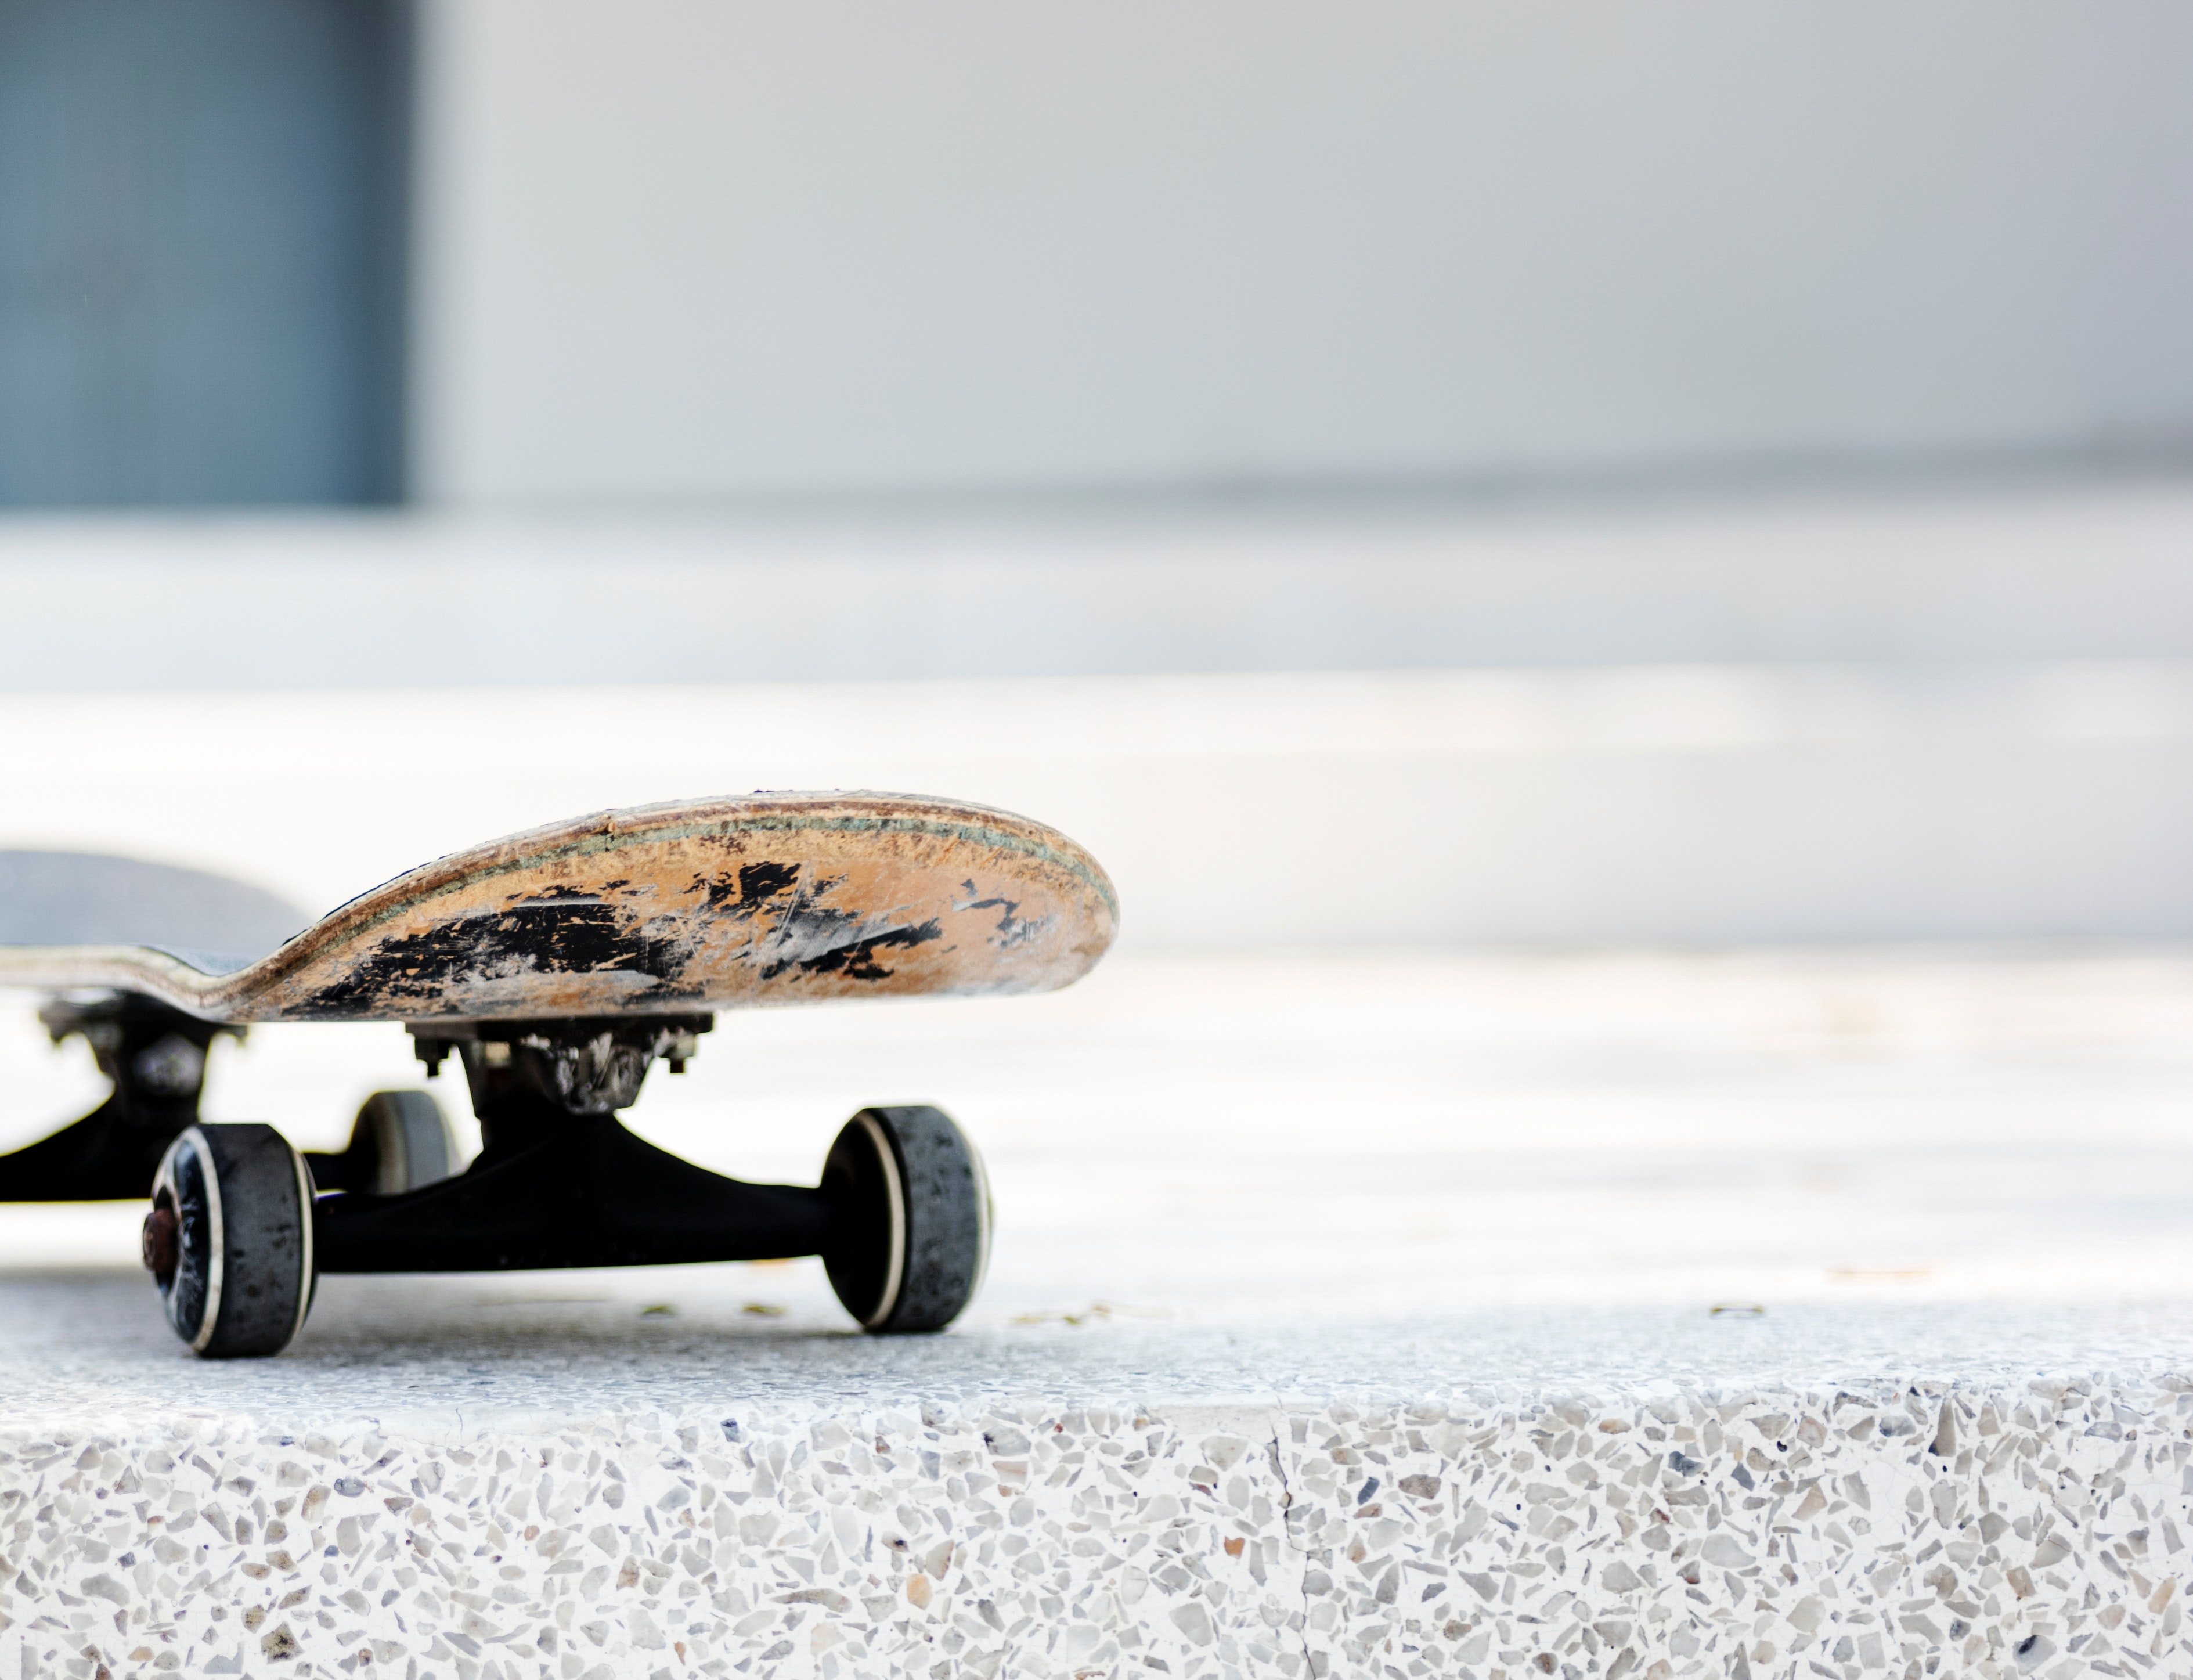 sports, board, skateboard, wheels